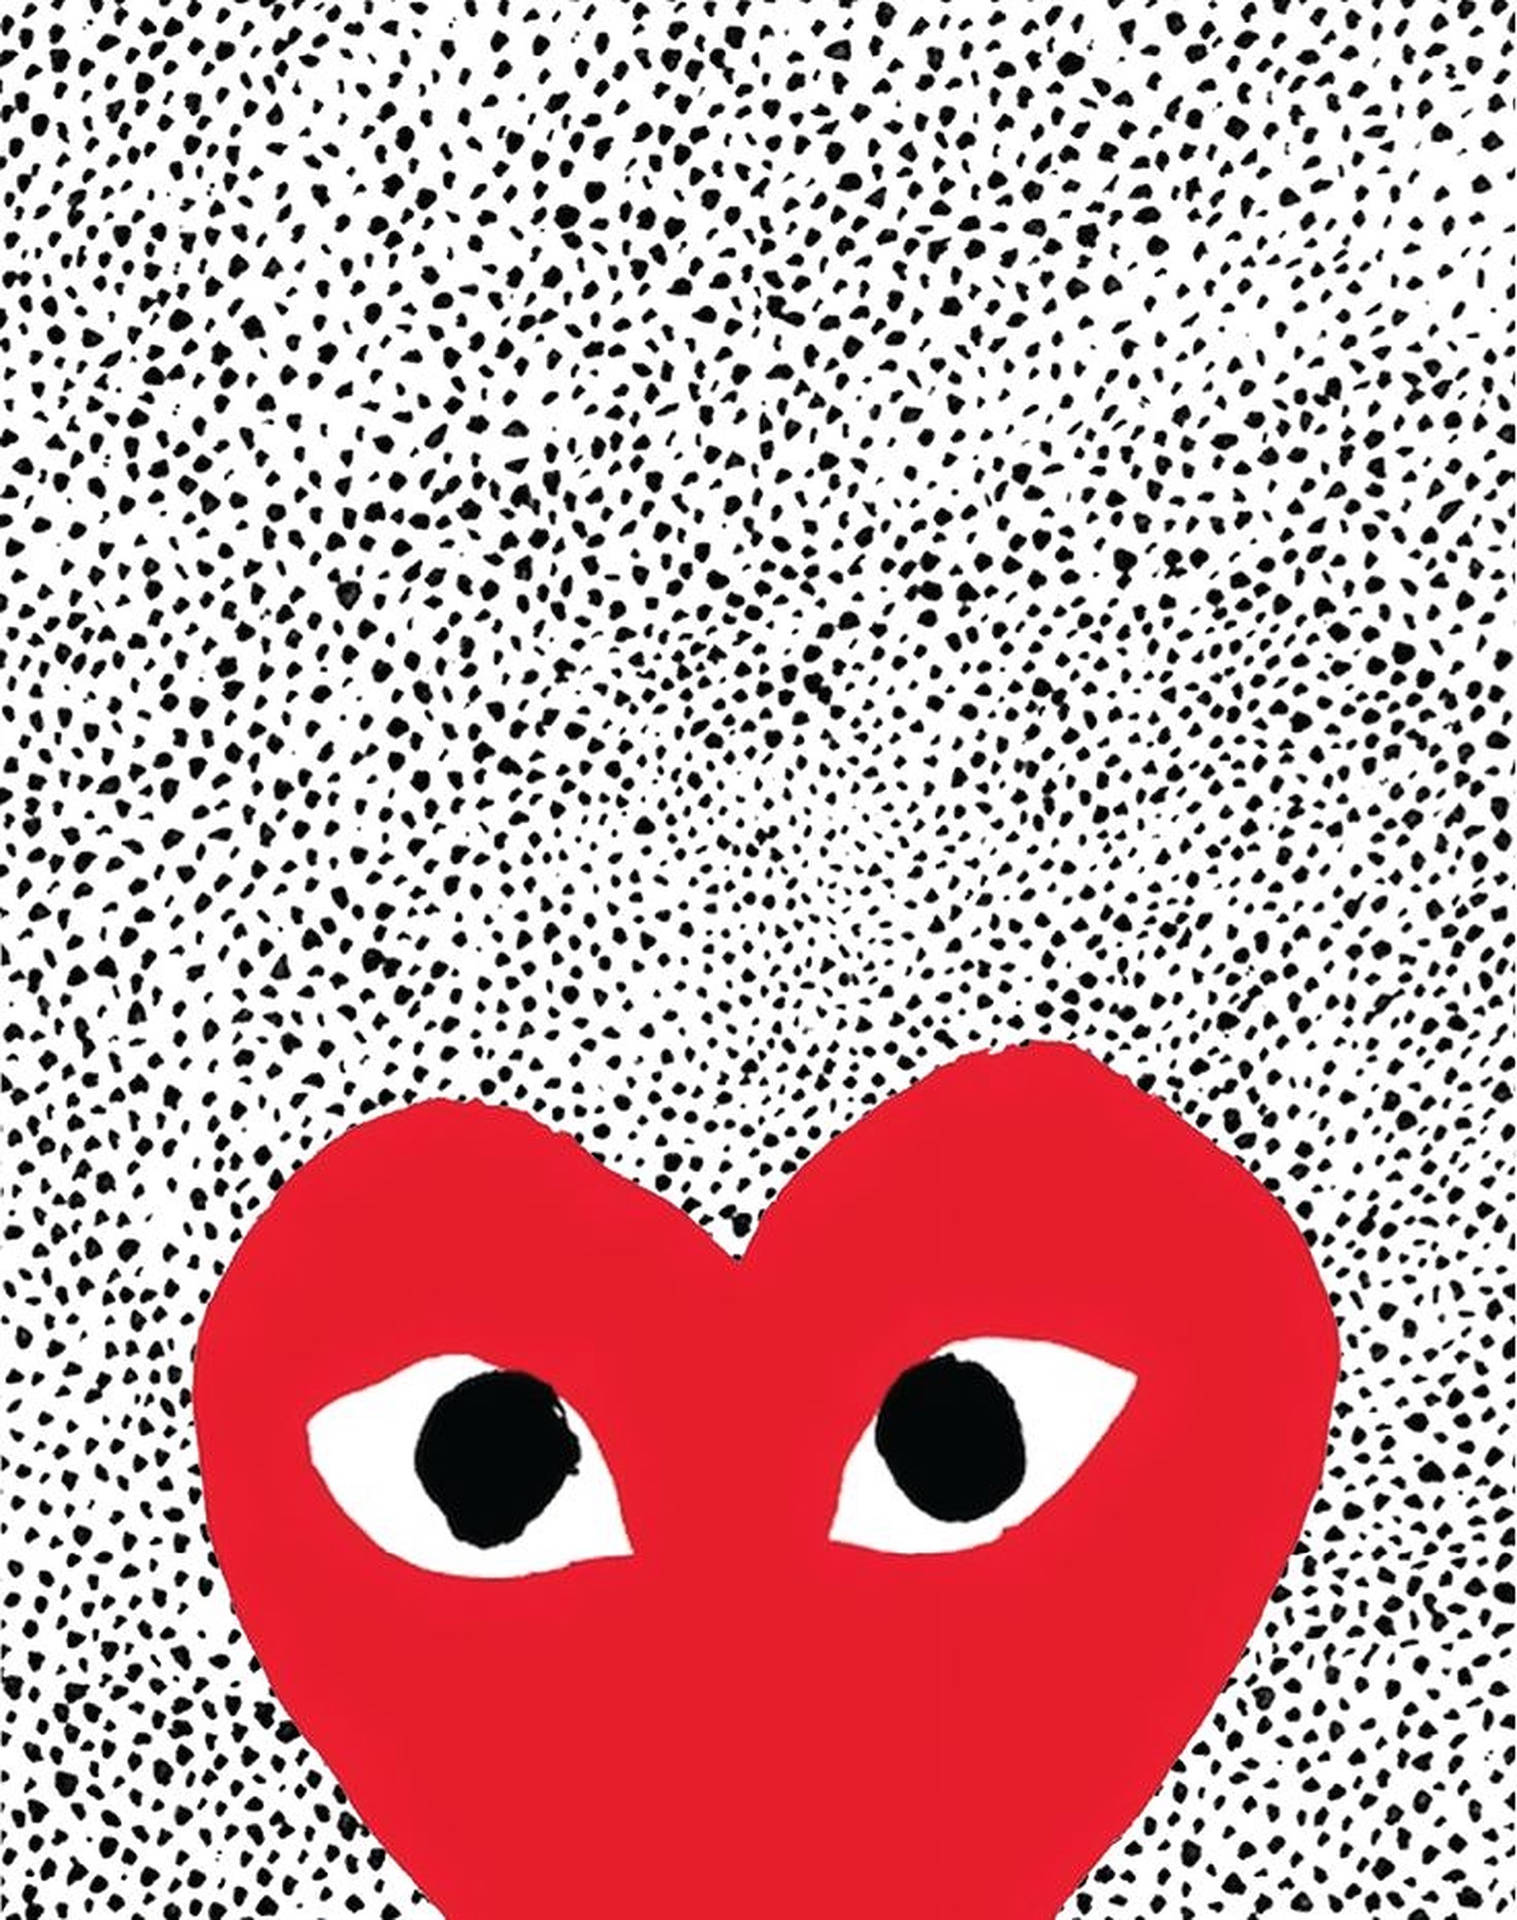 Red Heart CDG Static Wallpaper